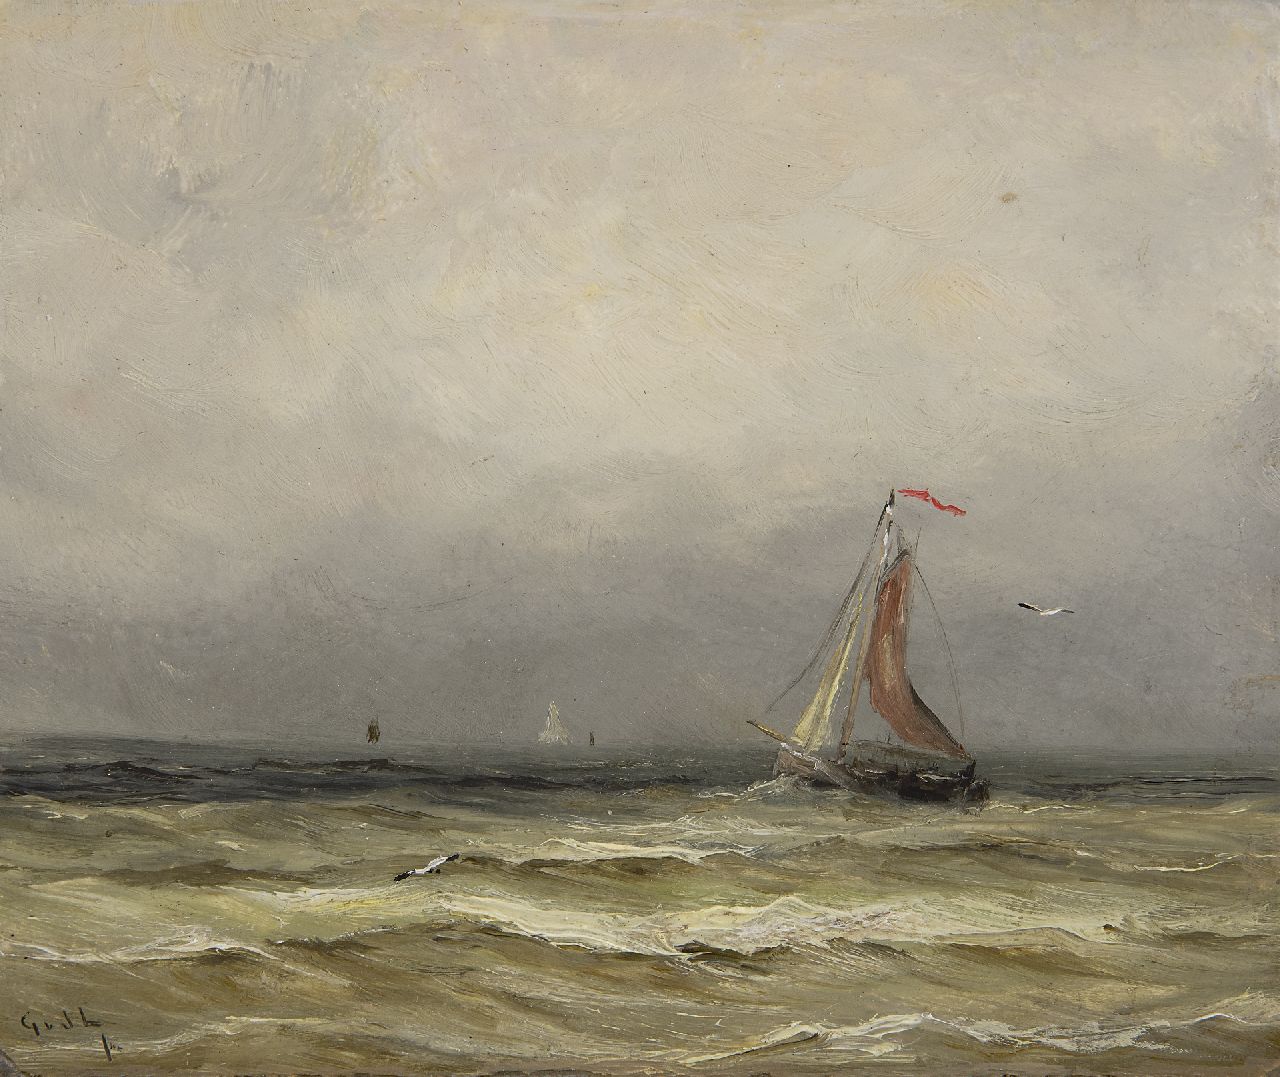 Laan G. van der | Gerard van der Laan, Scheveningse bomschuit op zee, olieverf op schildersboard 15,7 x 18,6 cm, gesigneerd linksonder met initialen